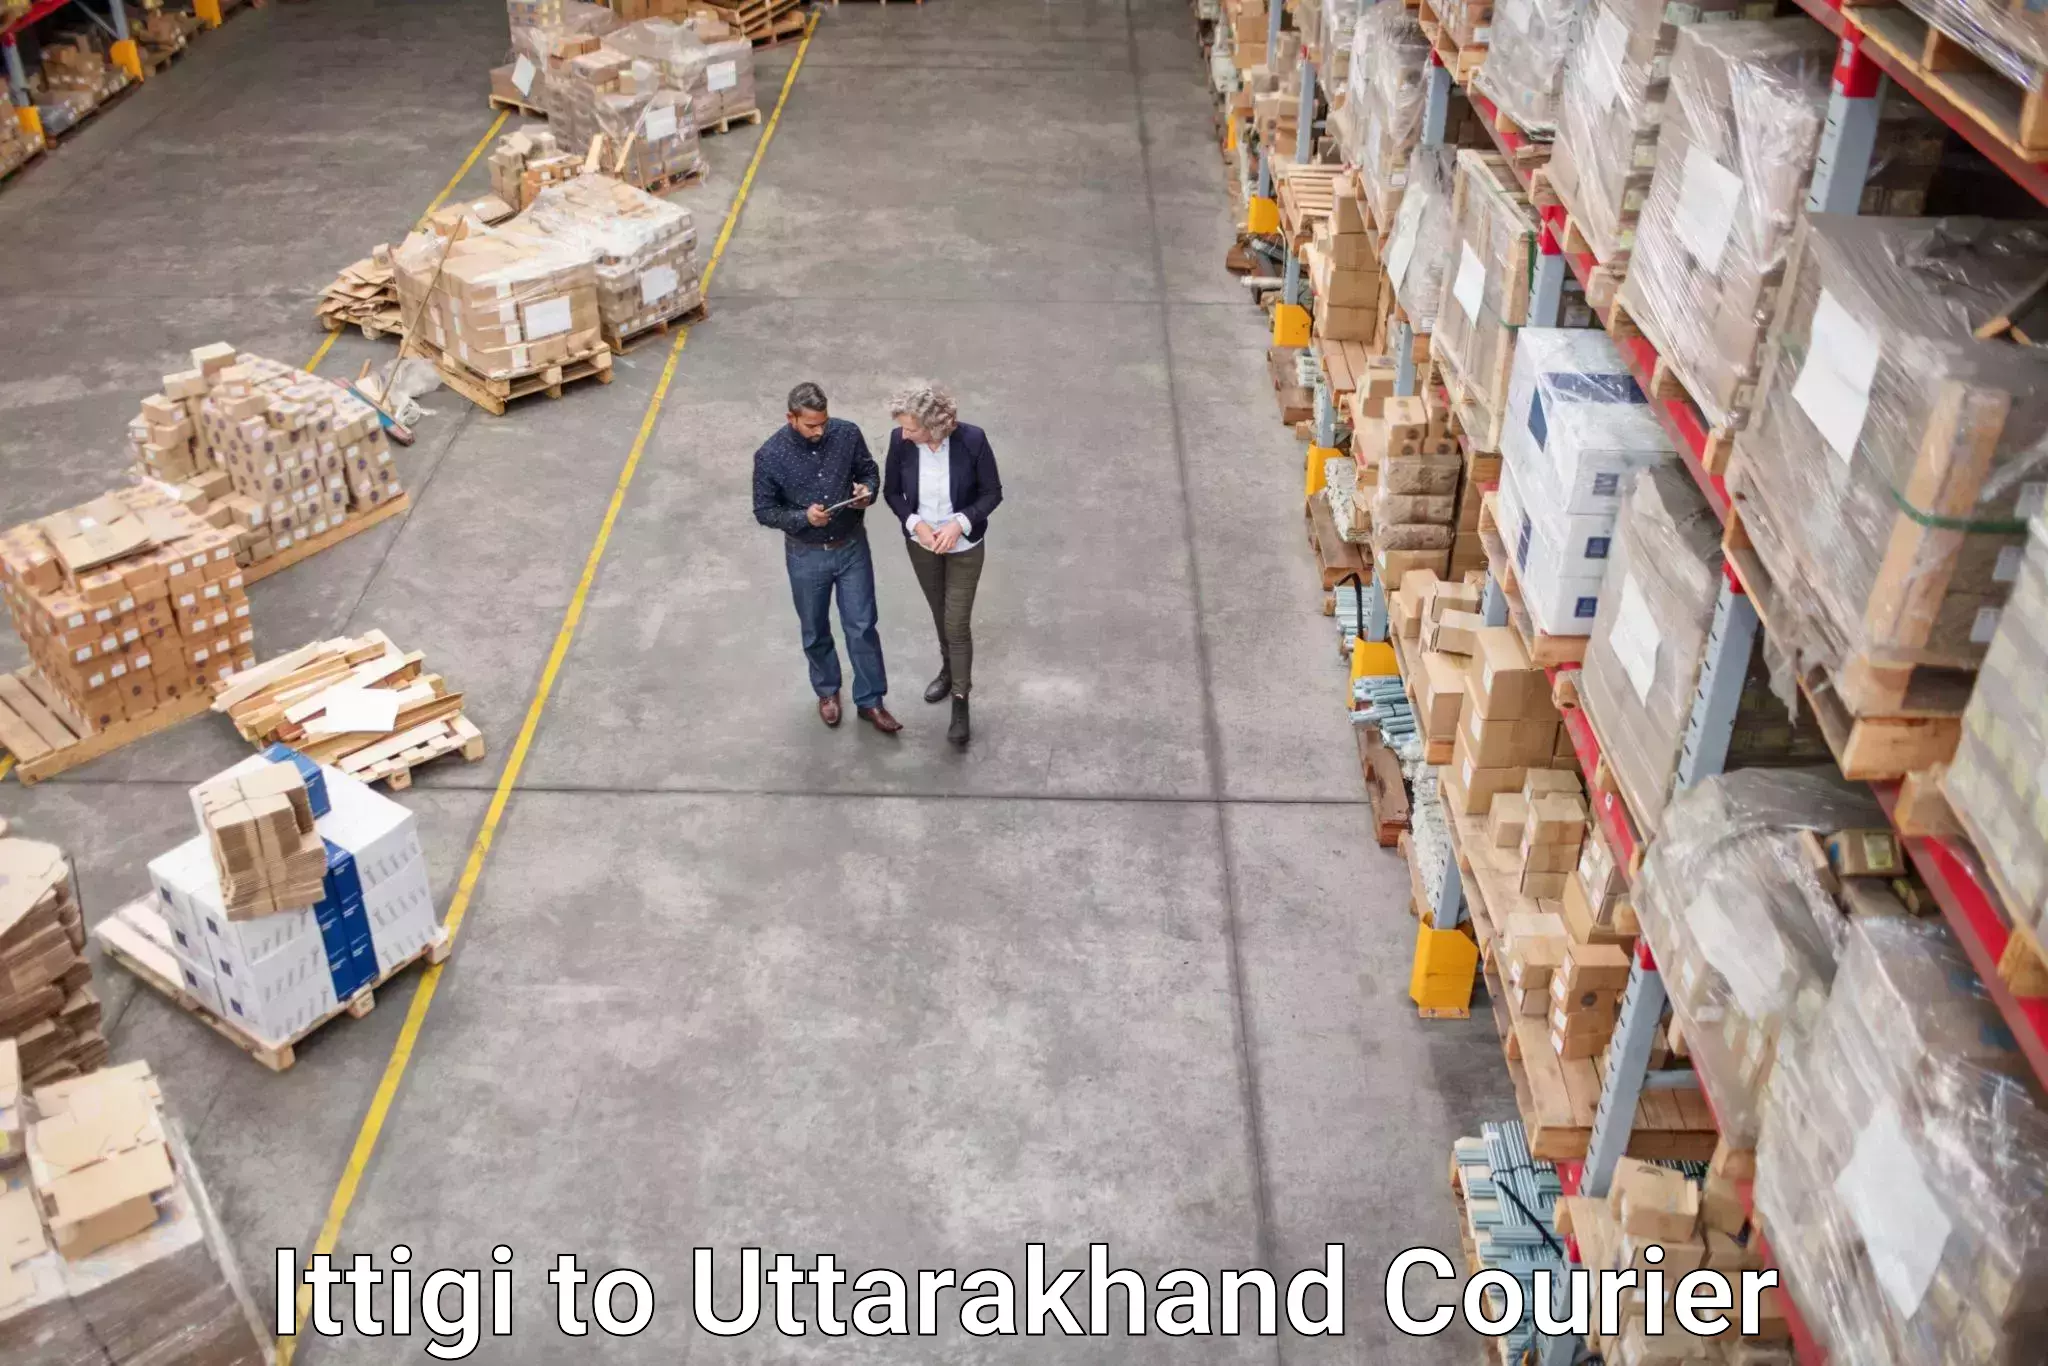 Package delivery network Ittigi to Uttarakhand